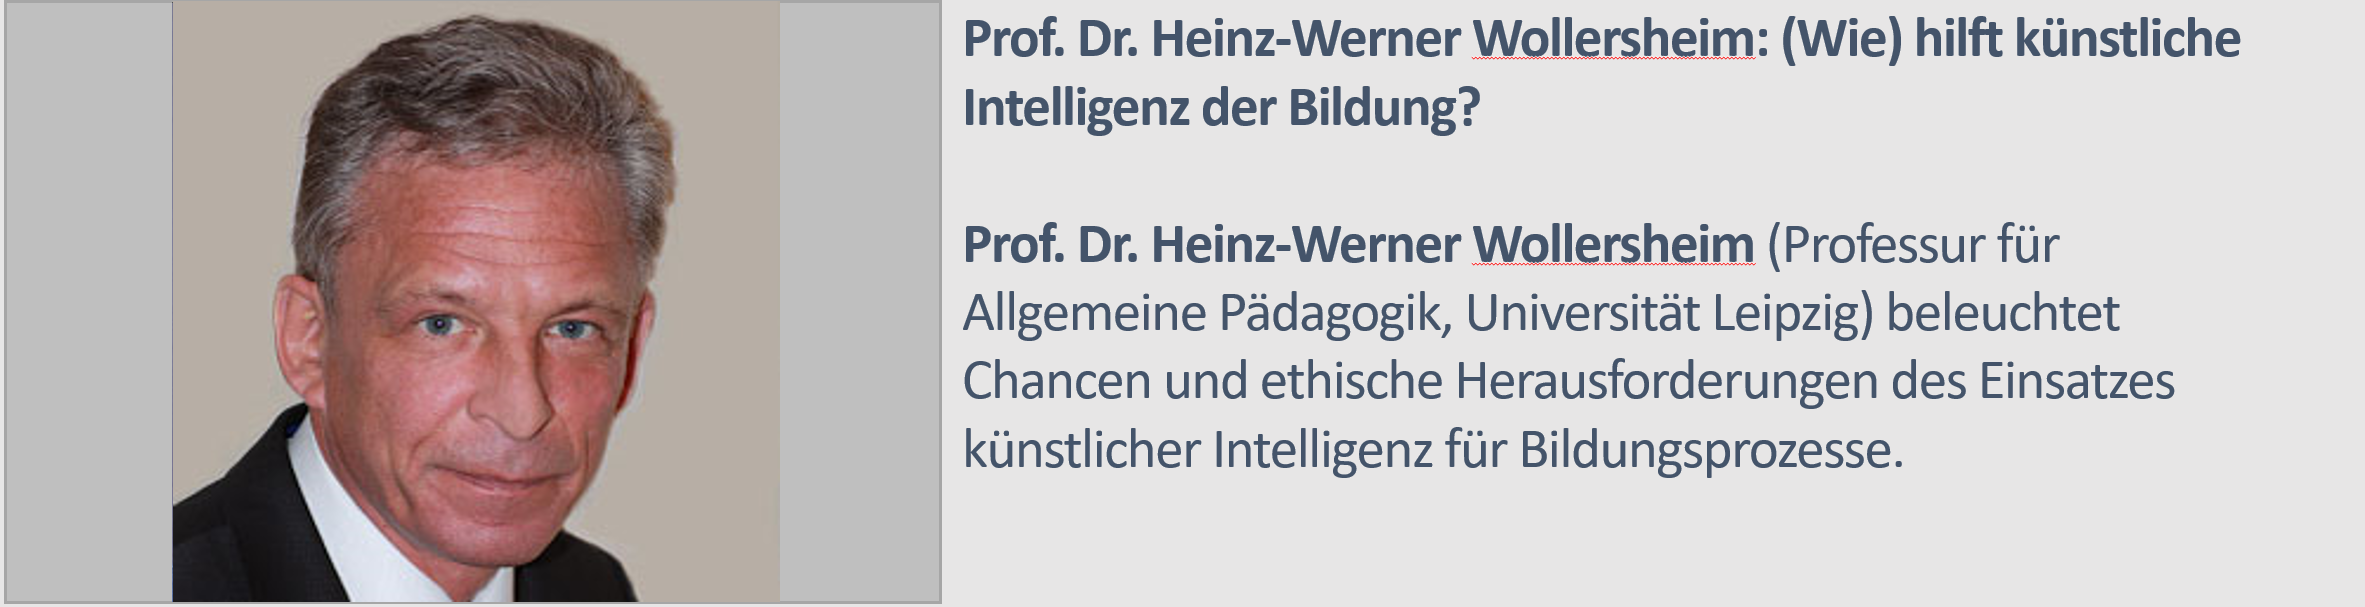 Heinz_Werner Wollersheim